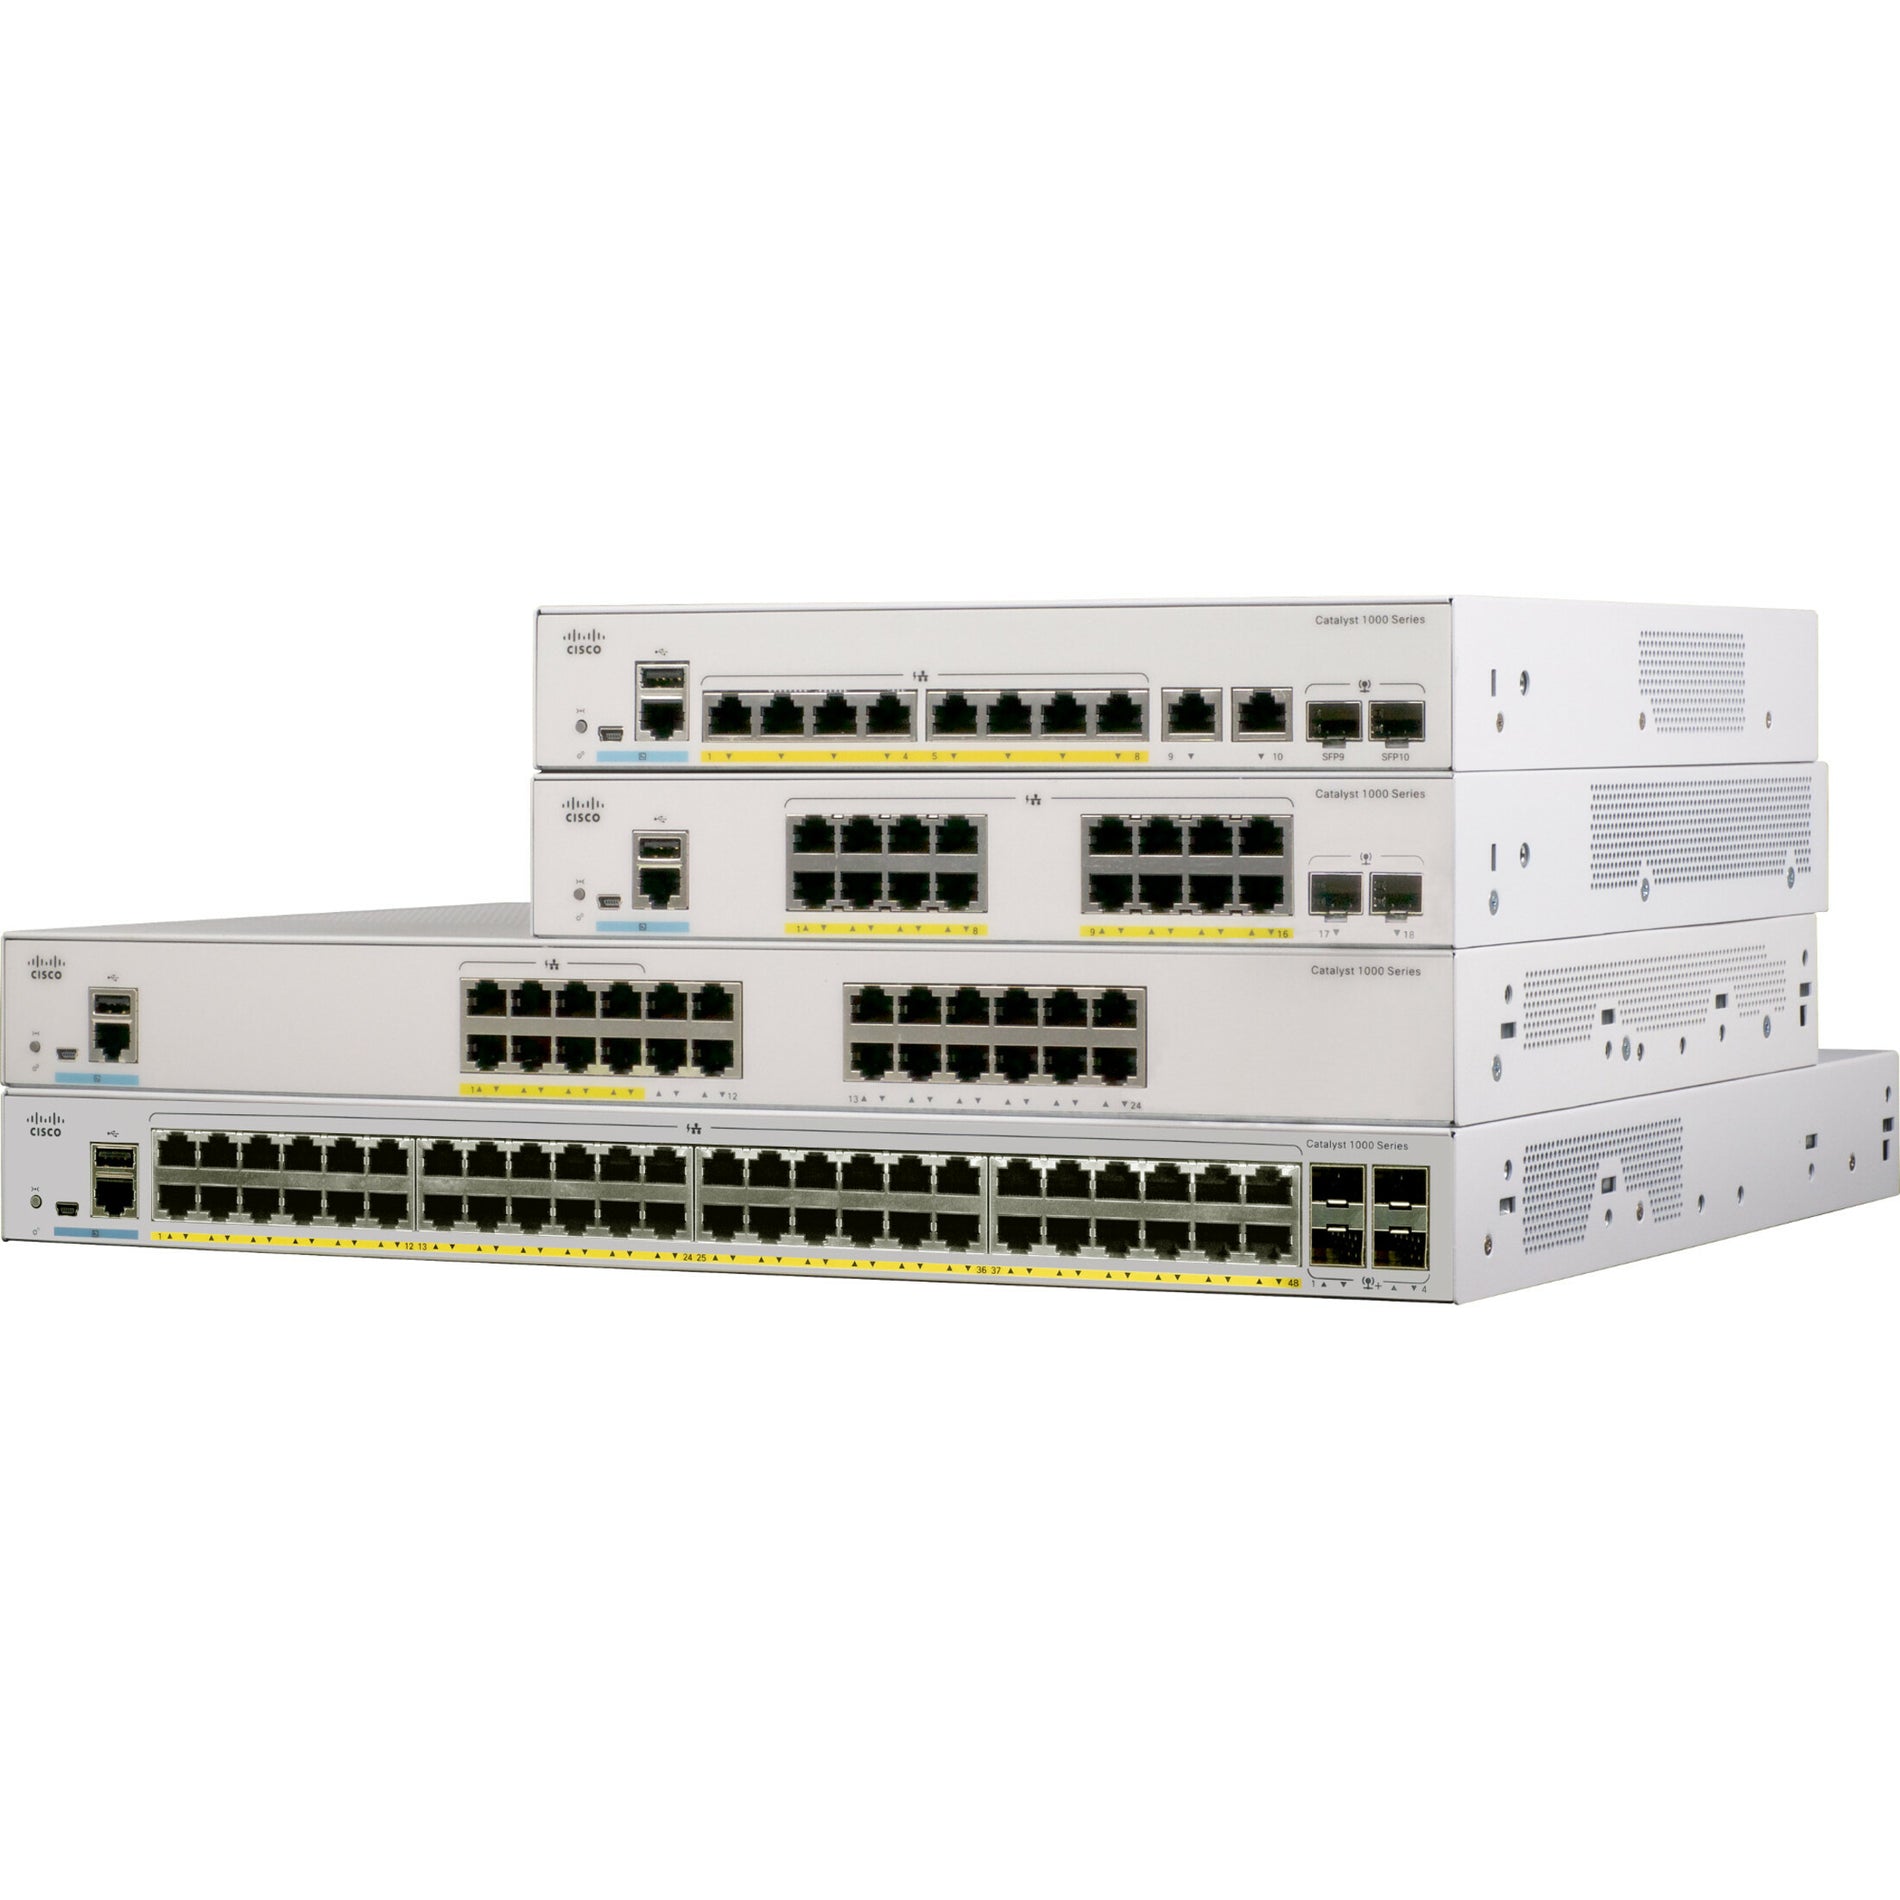 Cisco C1000-48T-4G-L Catalyst C1000-48T Ethernet Switch, 48 Gigabit Ethernet Ports, 4 Gigabit Ethernet Uplink Ports